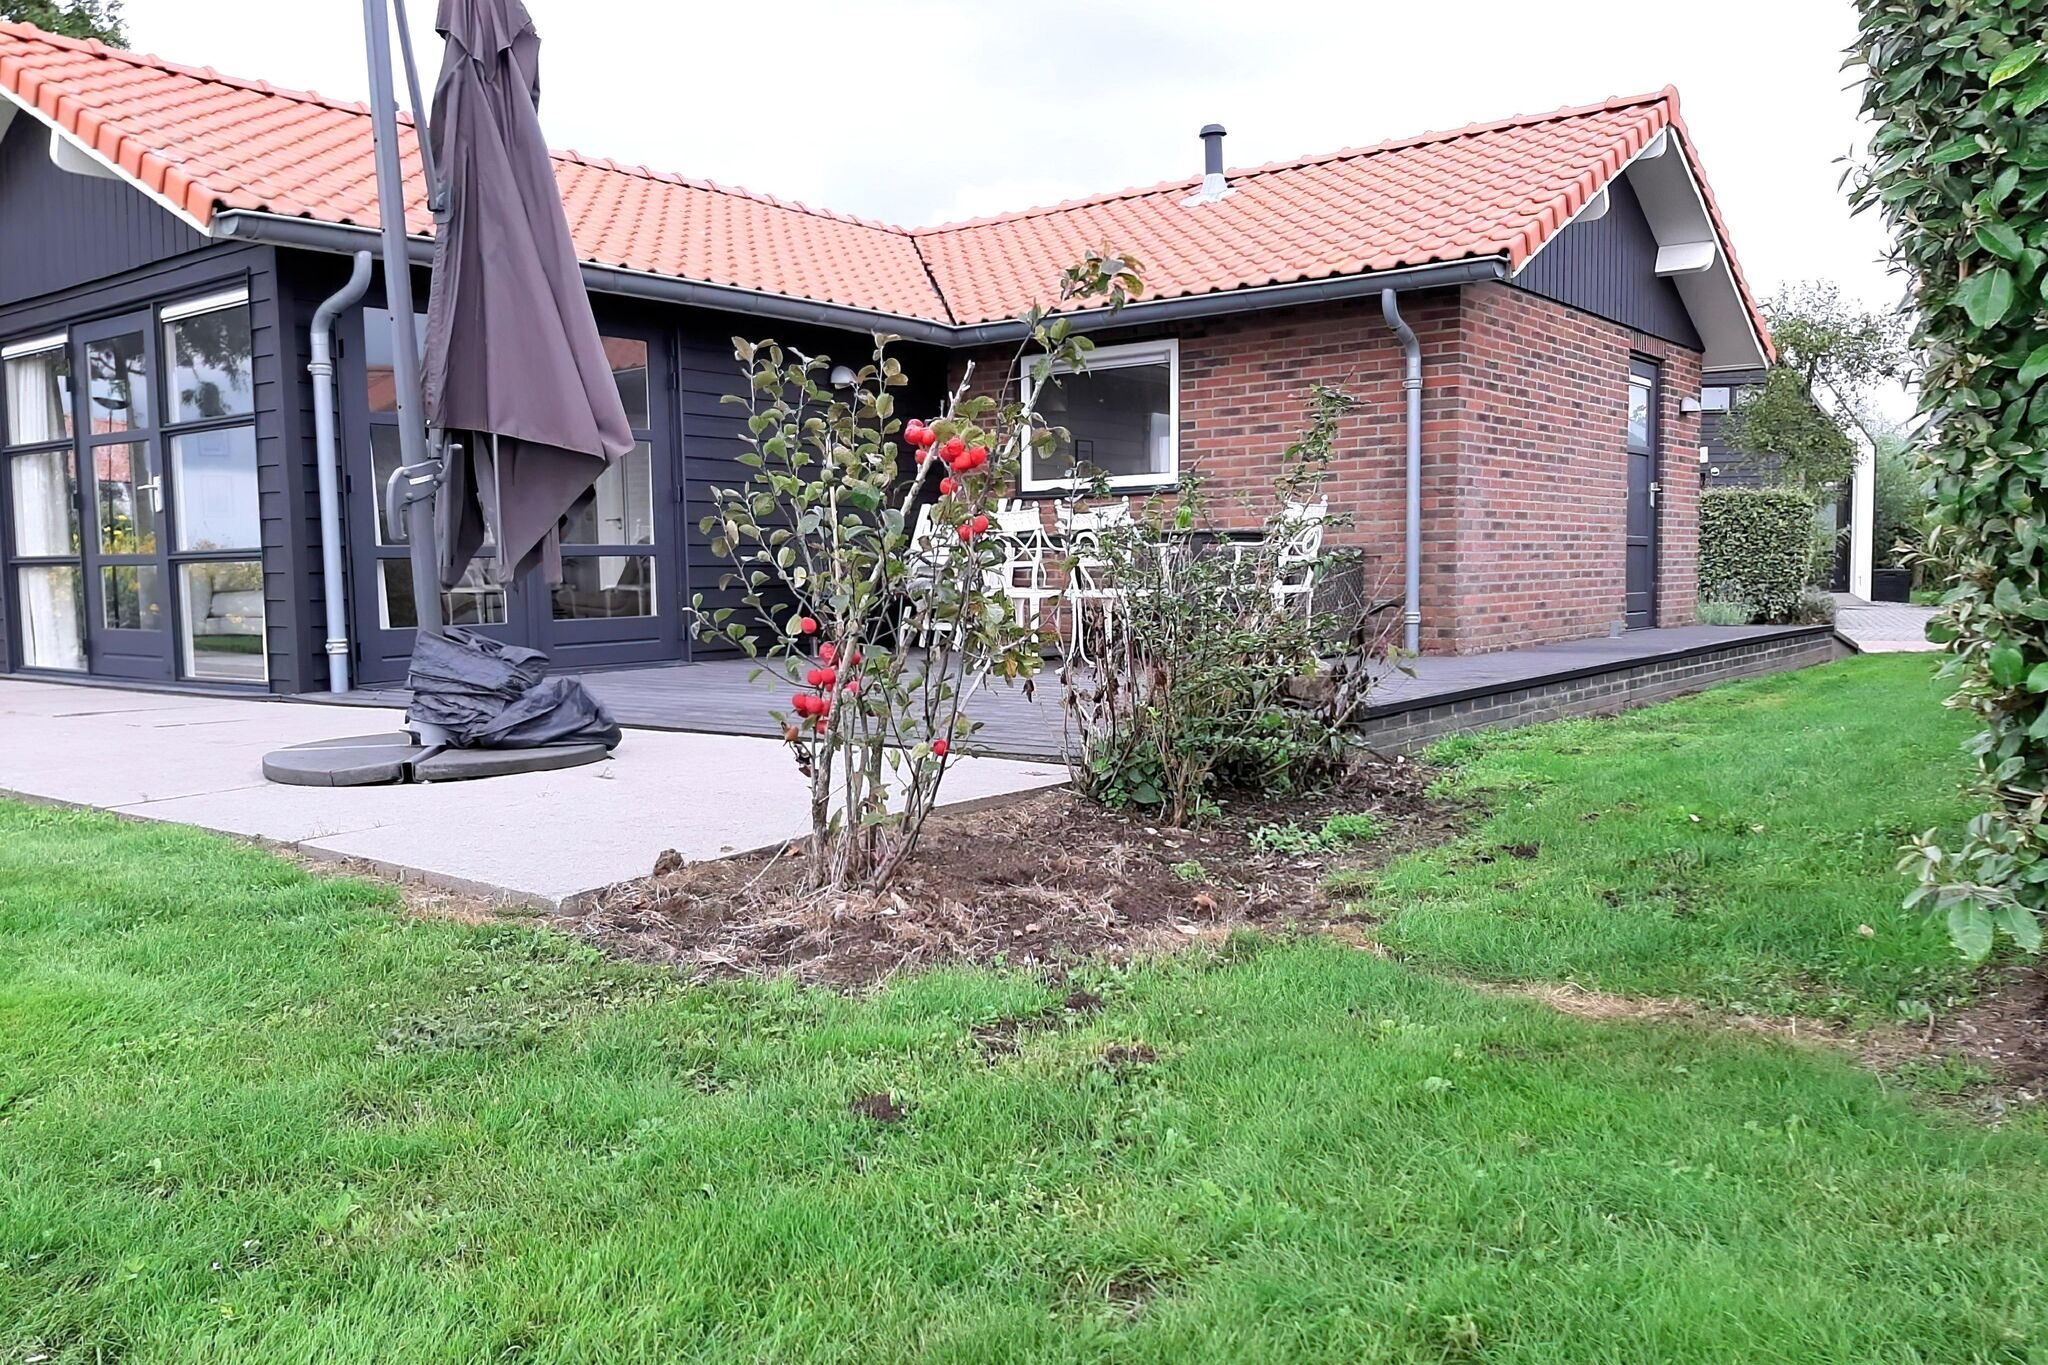 Nice holiday home in Kattendijke with garden